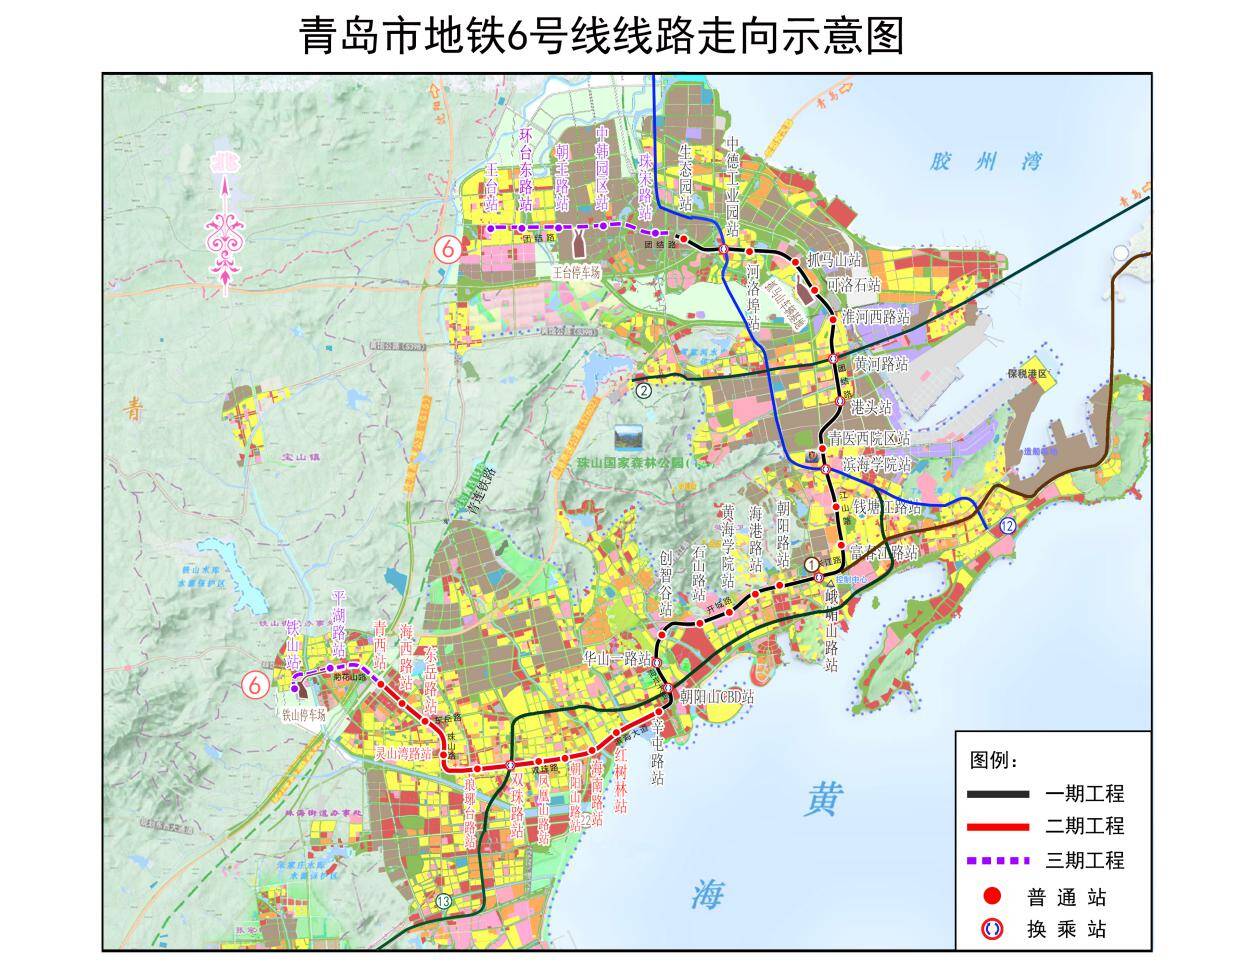 青岛地铁6号线二期开工建设计划2027年完工